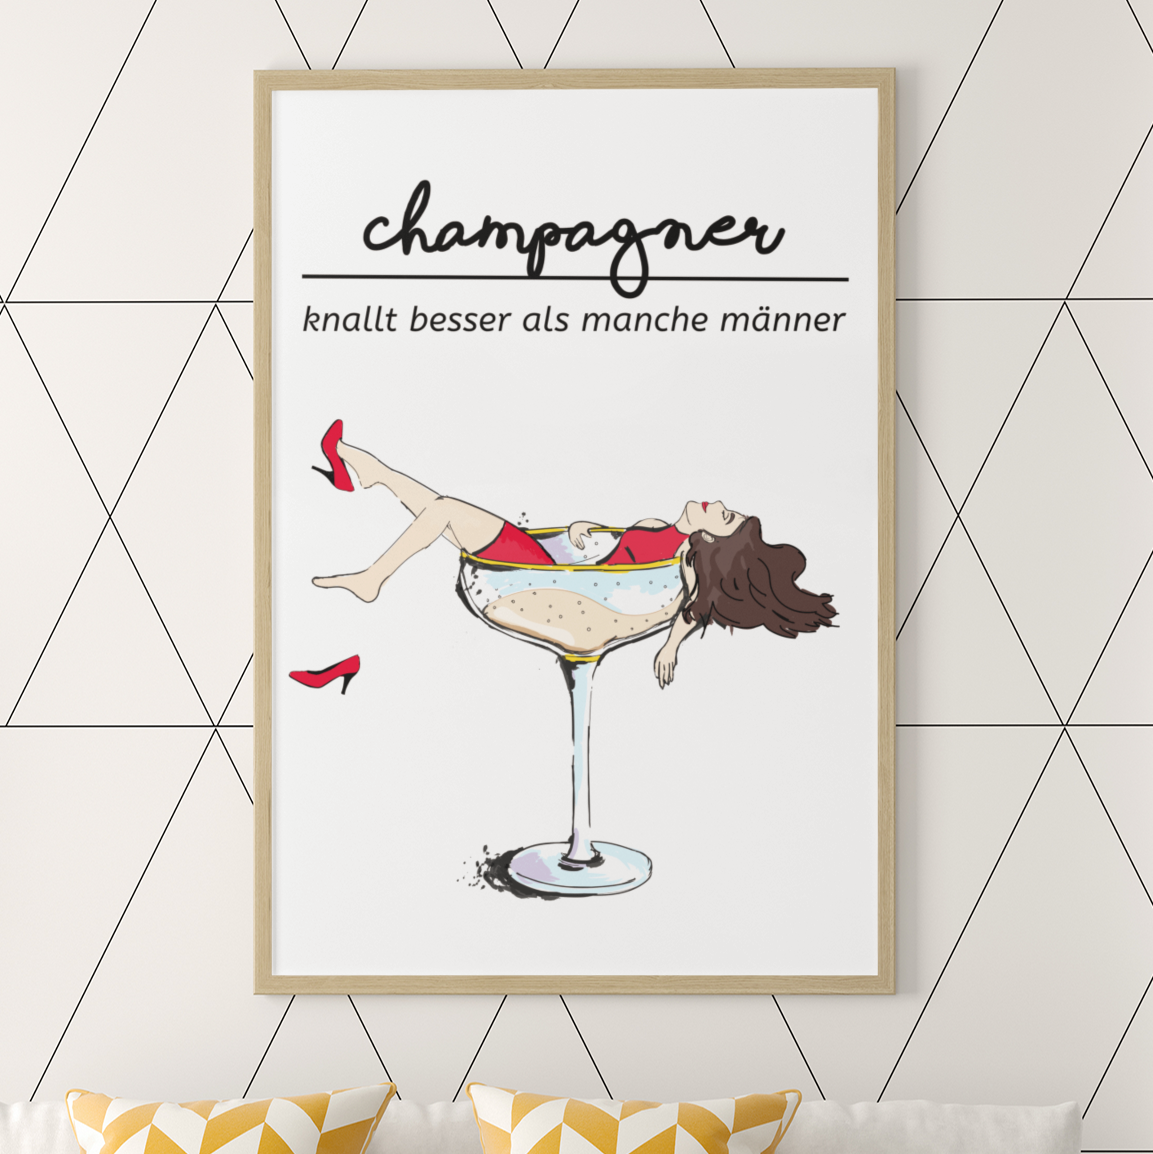 Champagner knallt besser - Premium Poster - Weinspirits